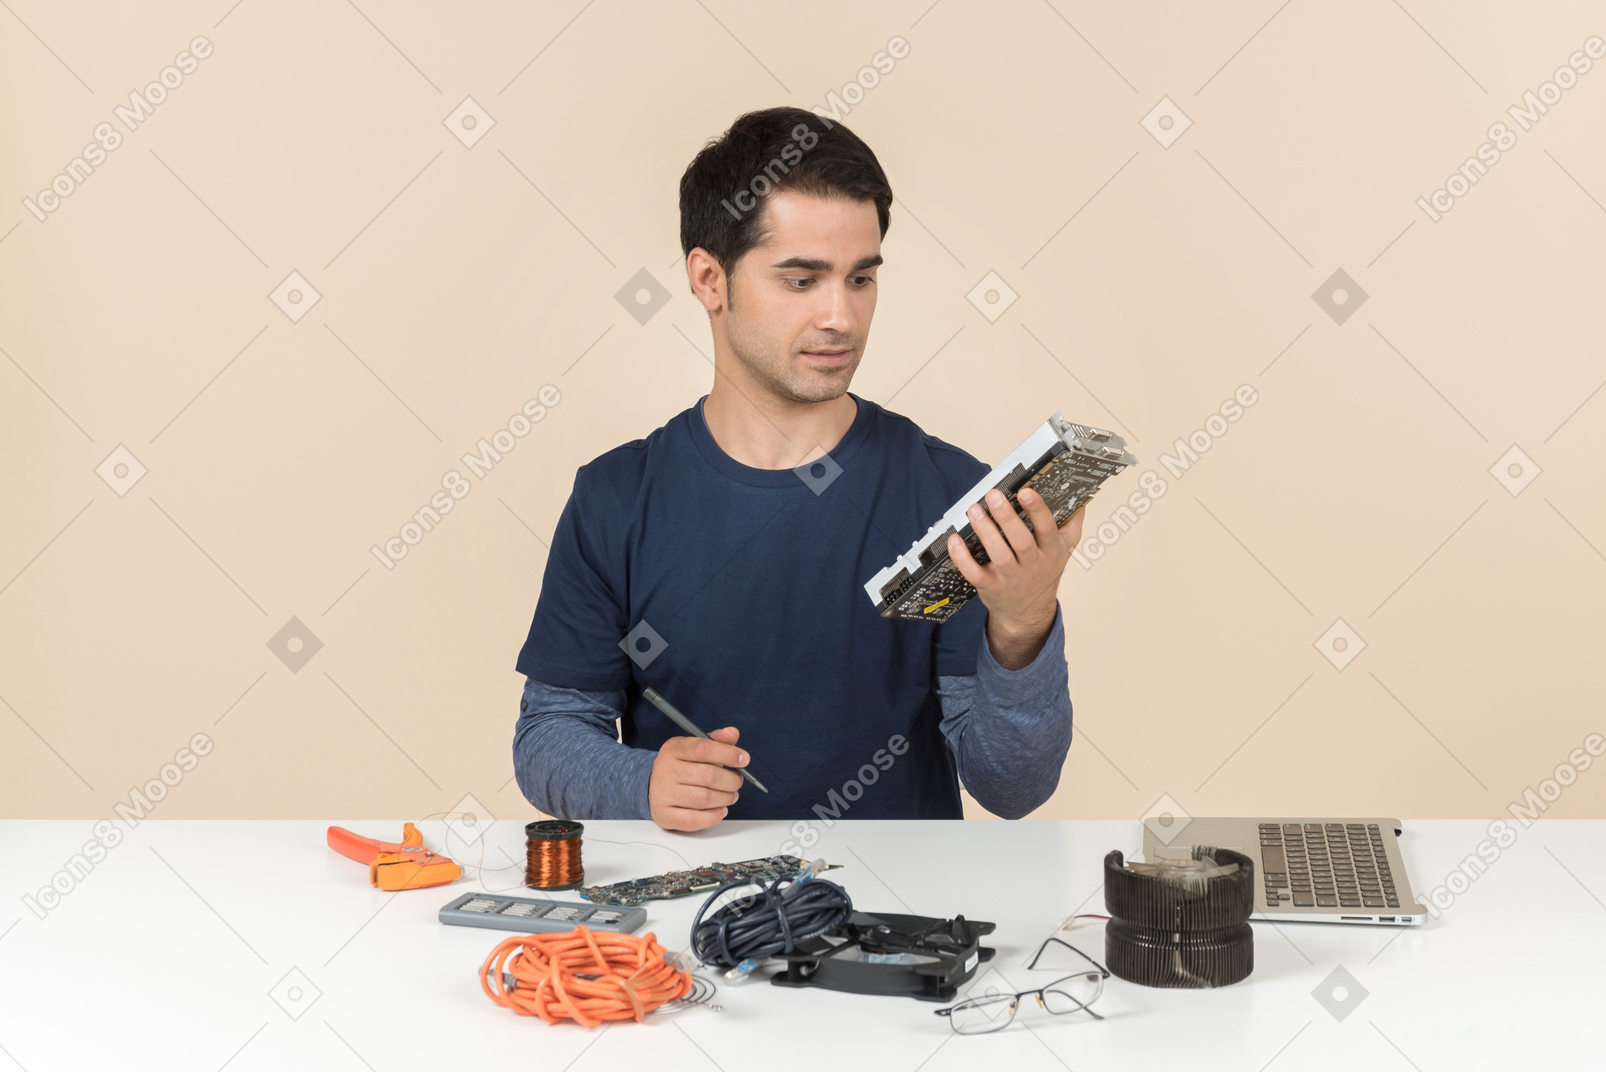 Un jeune homme en vêtements bleus occasionnels travaillant avec les détails de l'ordinateur